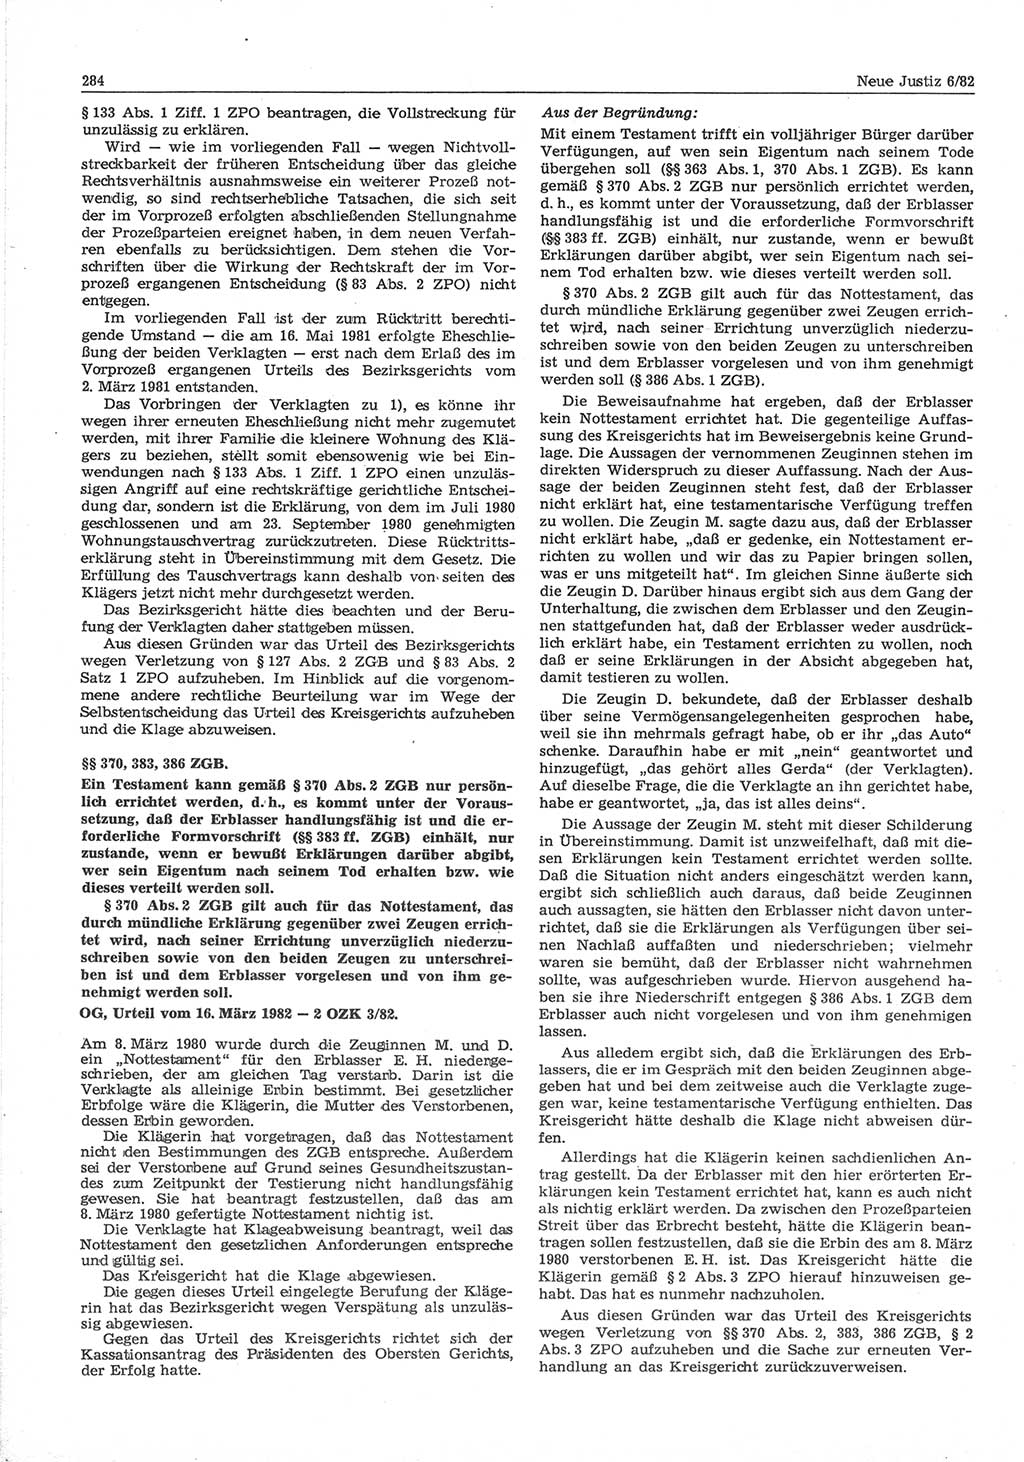 Neue Justiz (NJ), Zeitschrift für sozialistisches Recht und Gesetzlichkeit [Deutsche Demokratische Republik (DDR)], 36. Jahrgang 1982, Seite 284 (NJ DDR 1982, S. 284)